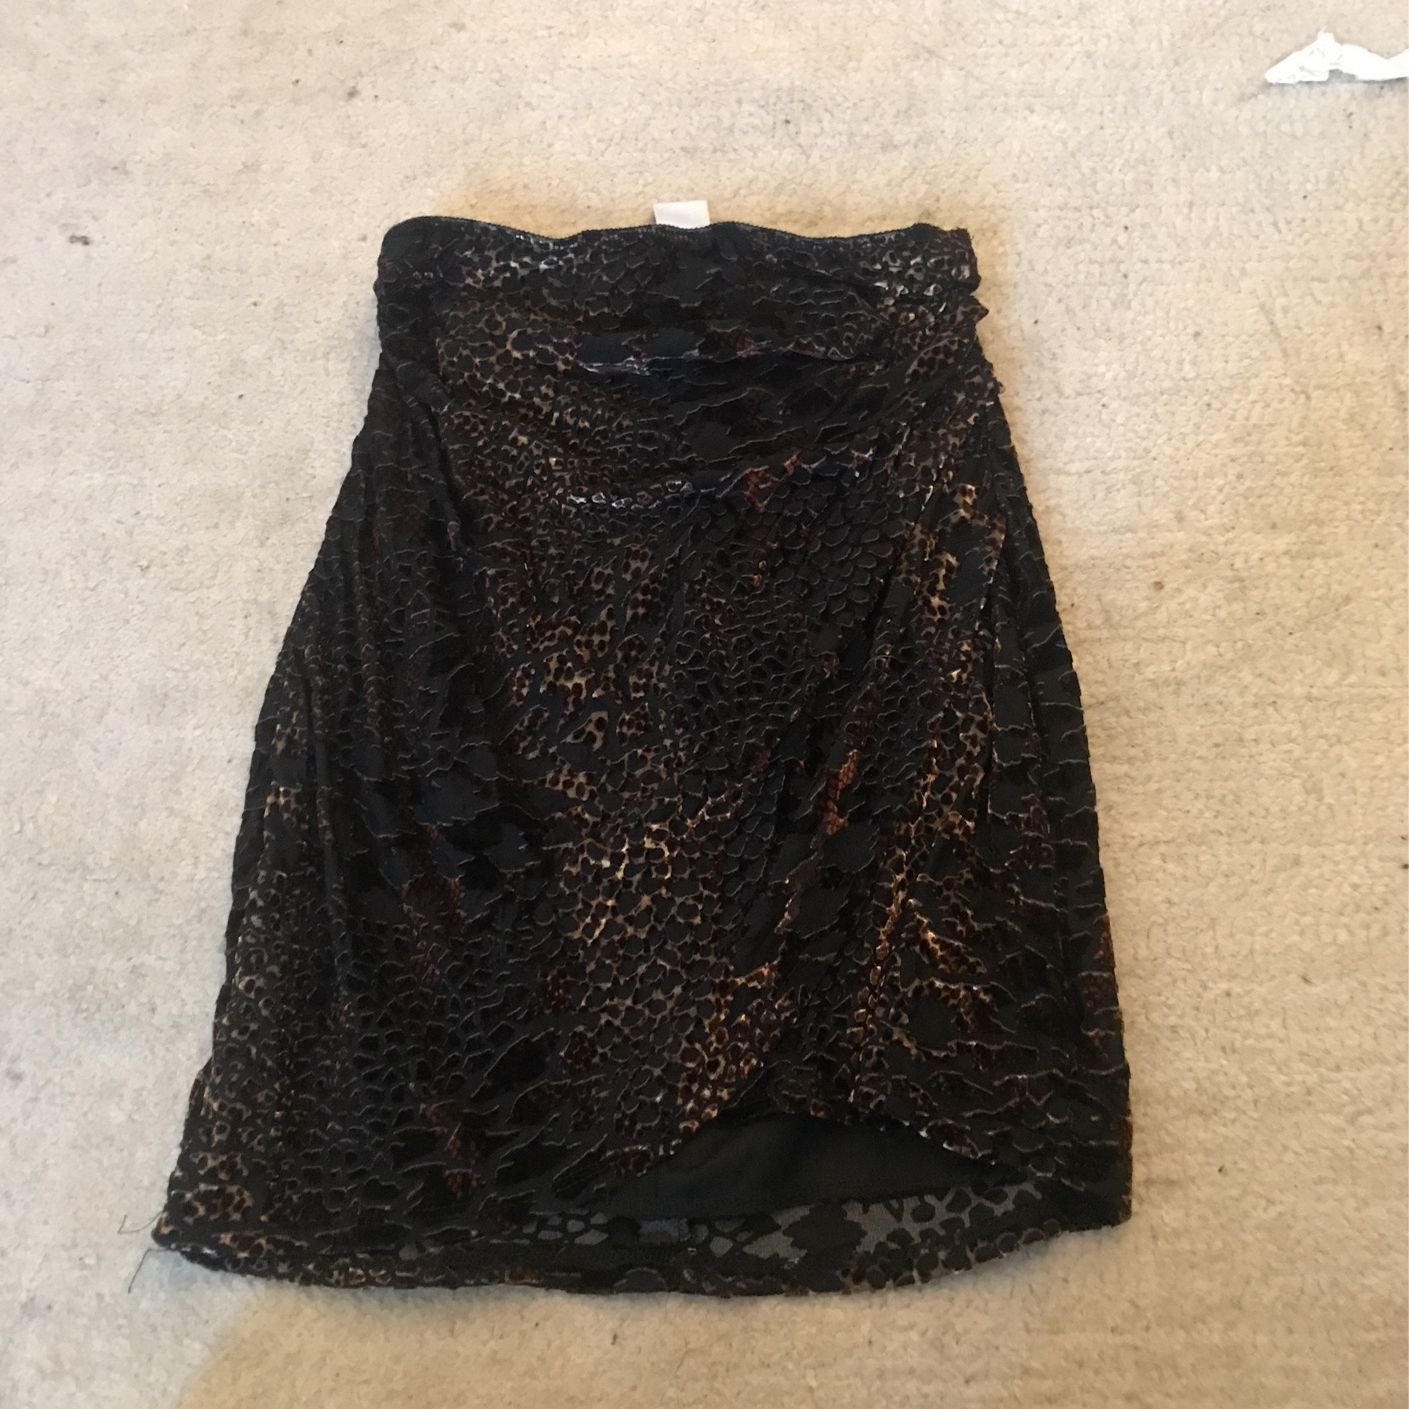 snake/tiger print mini skirt 